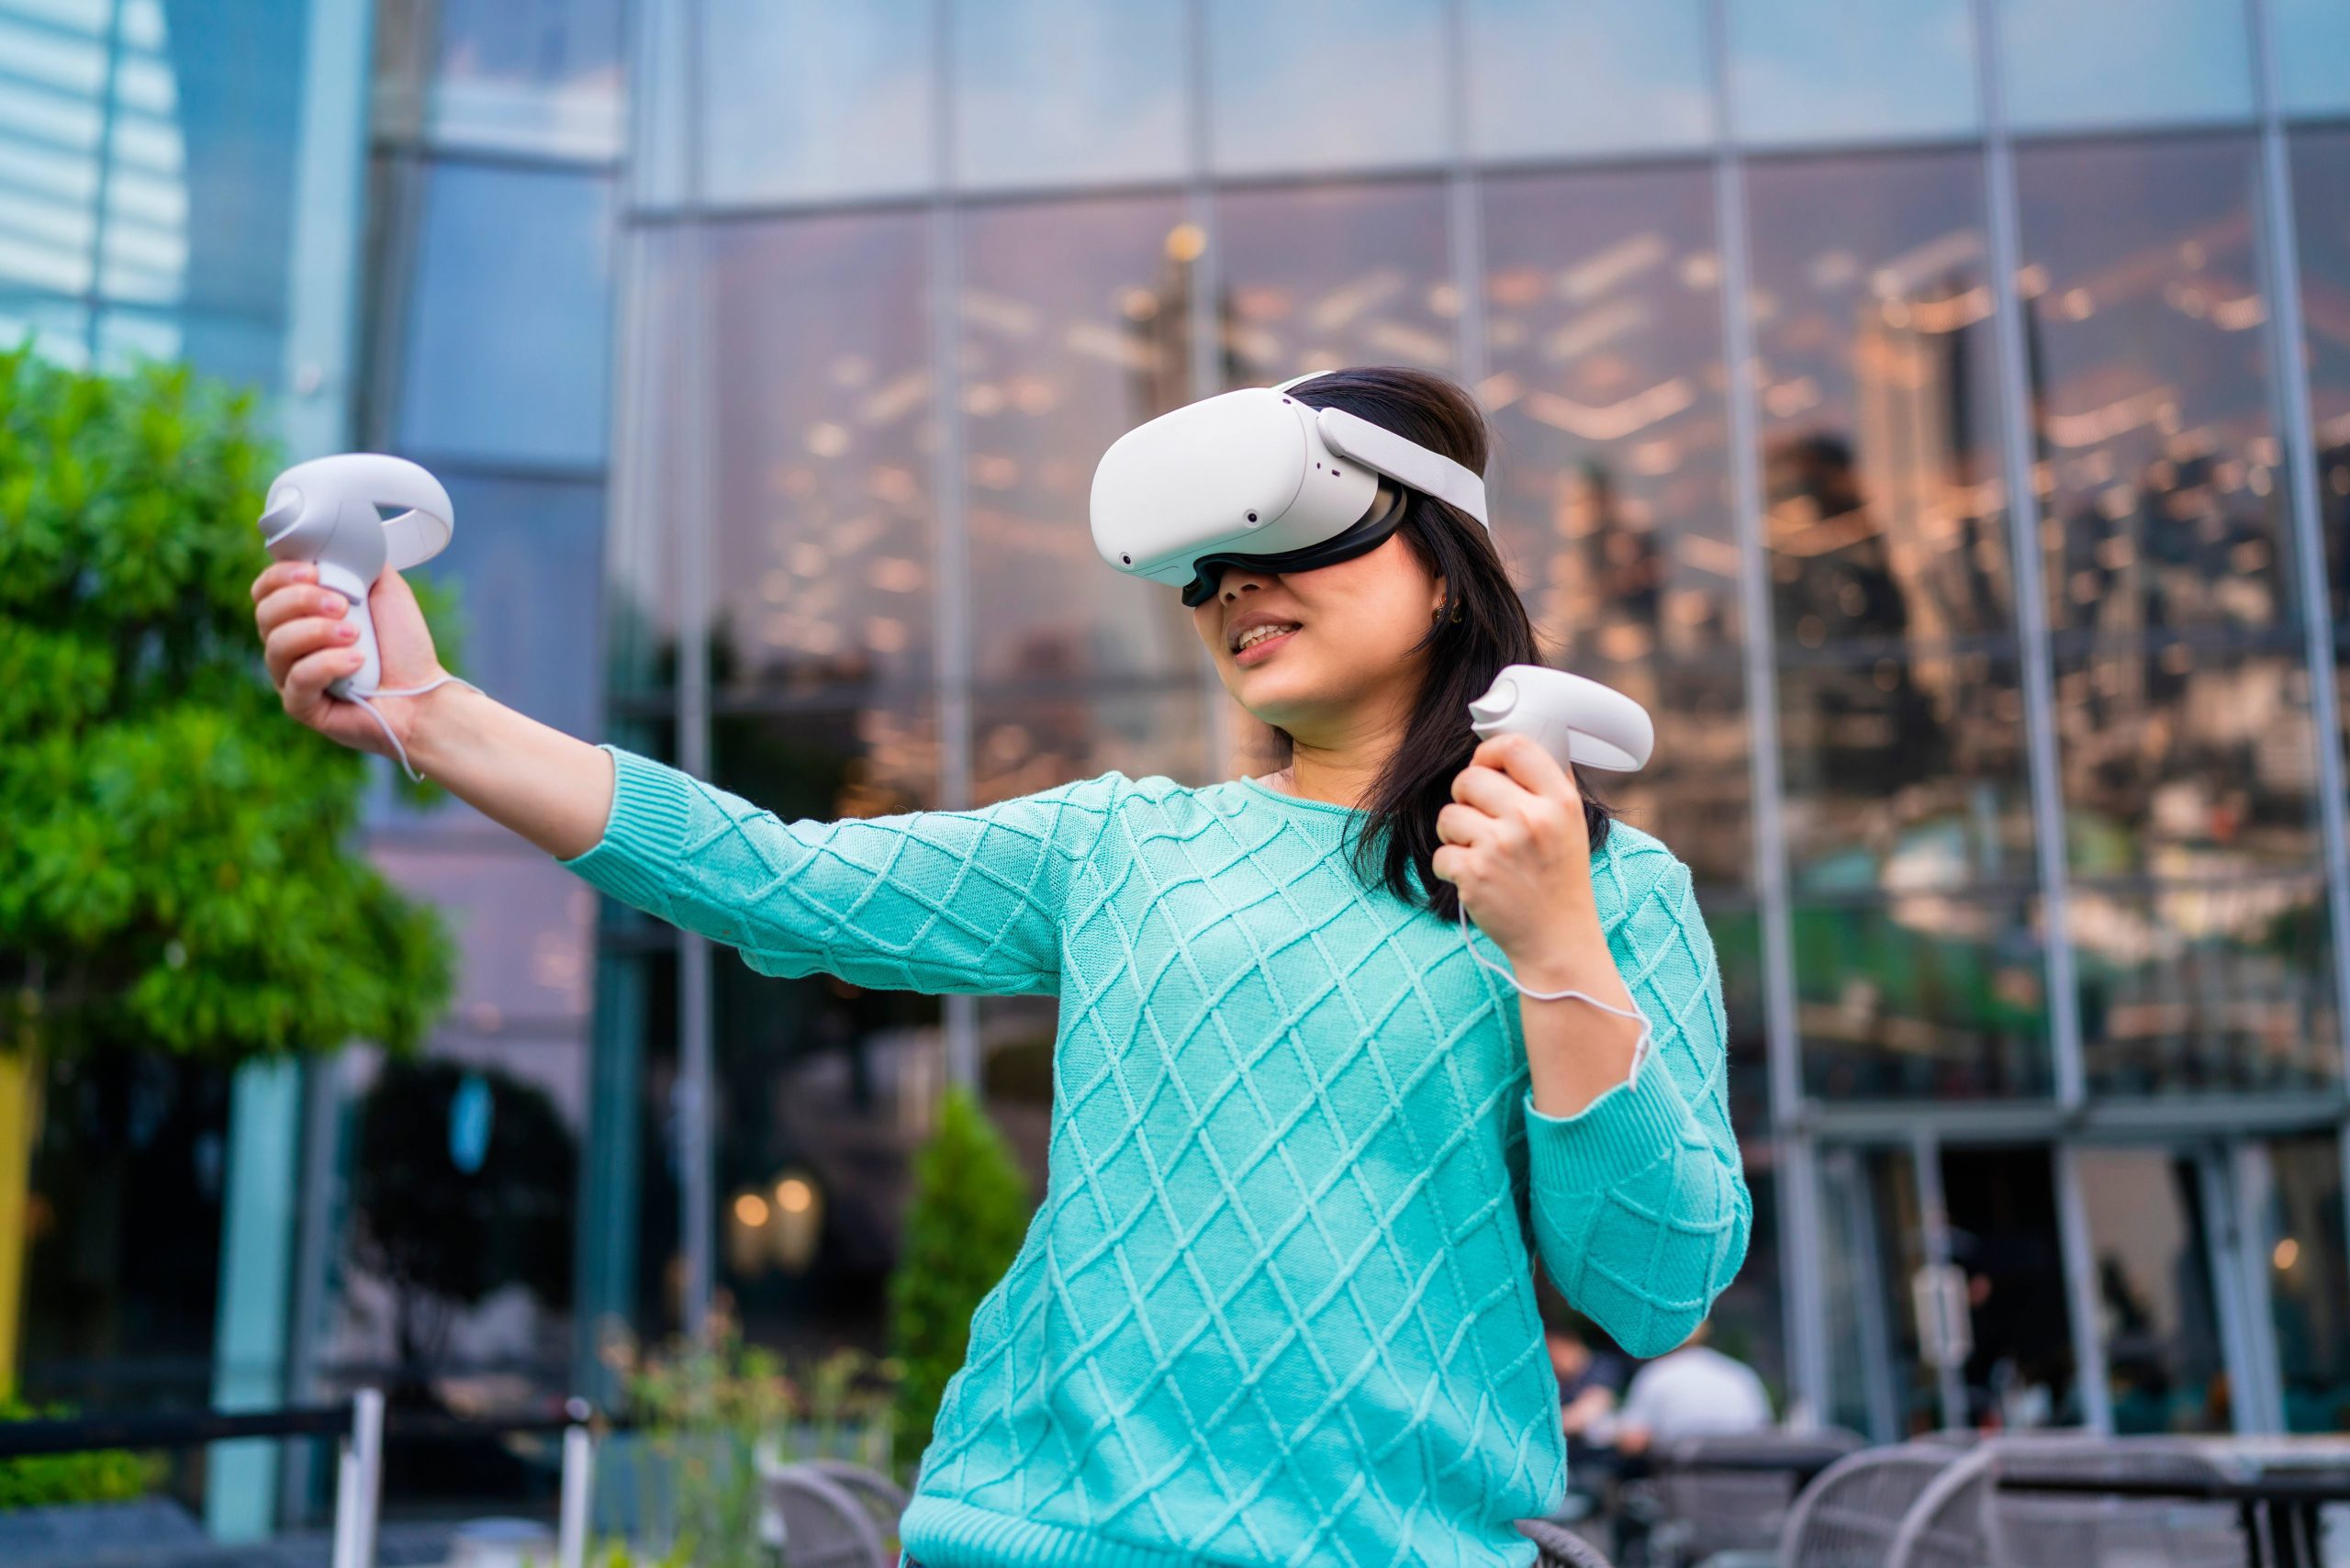 Meta, la empresa matriz de Facebook, aumenta el precio de gafas de realidad virtual Meta Quest 2 en 100 dólares